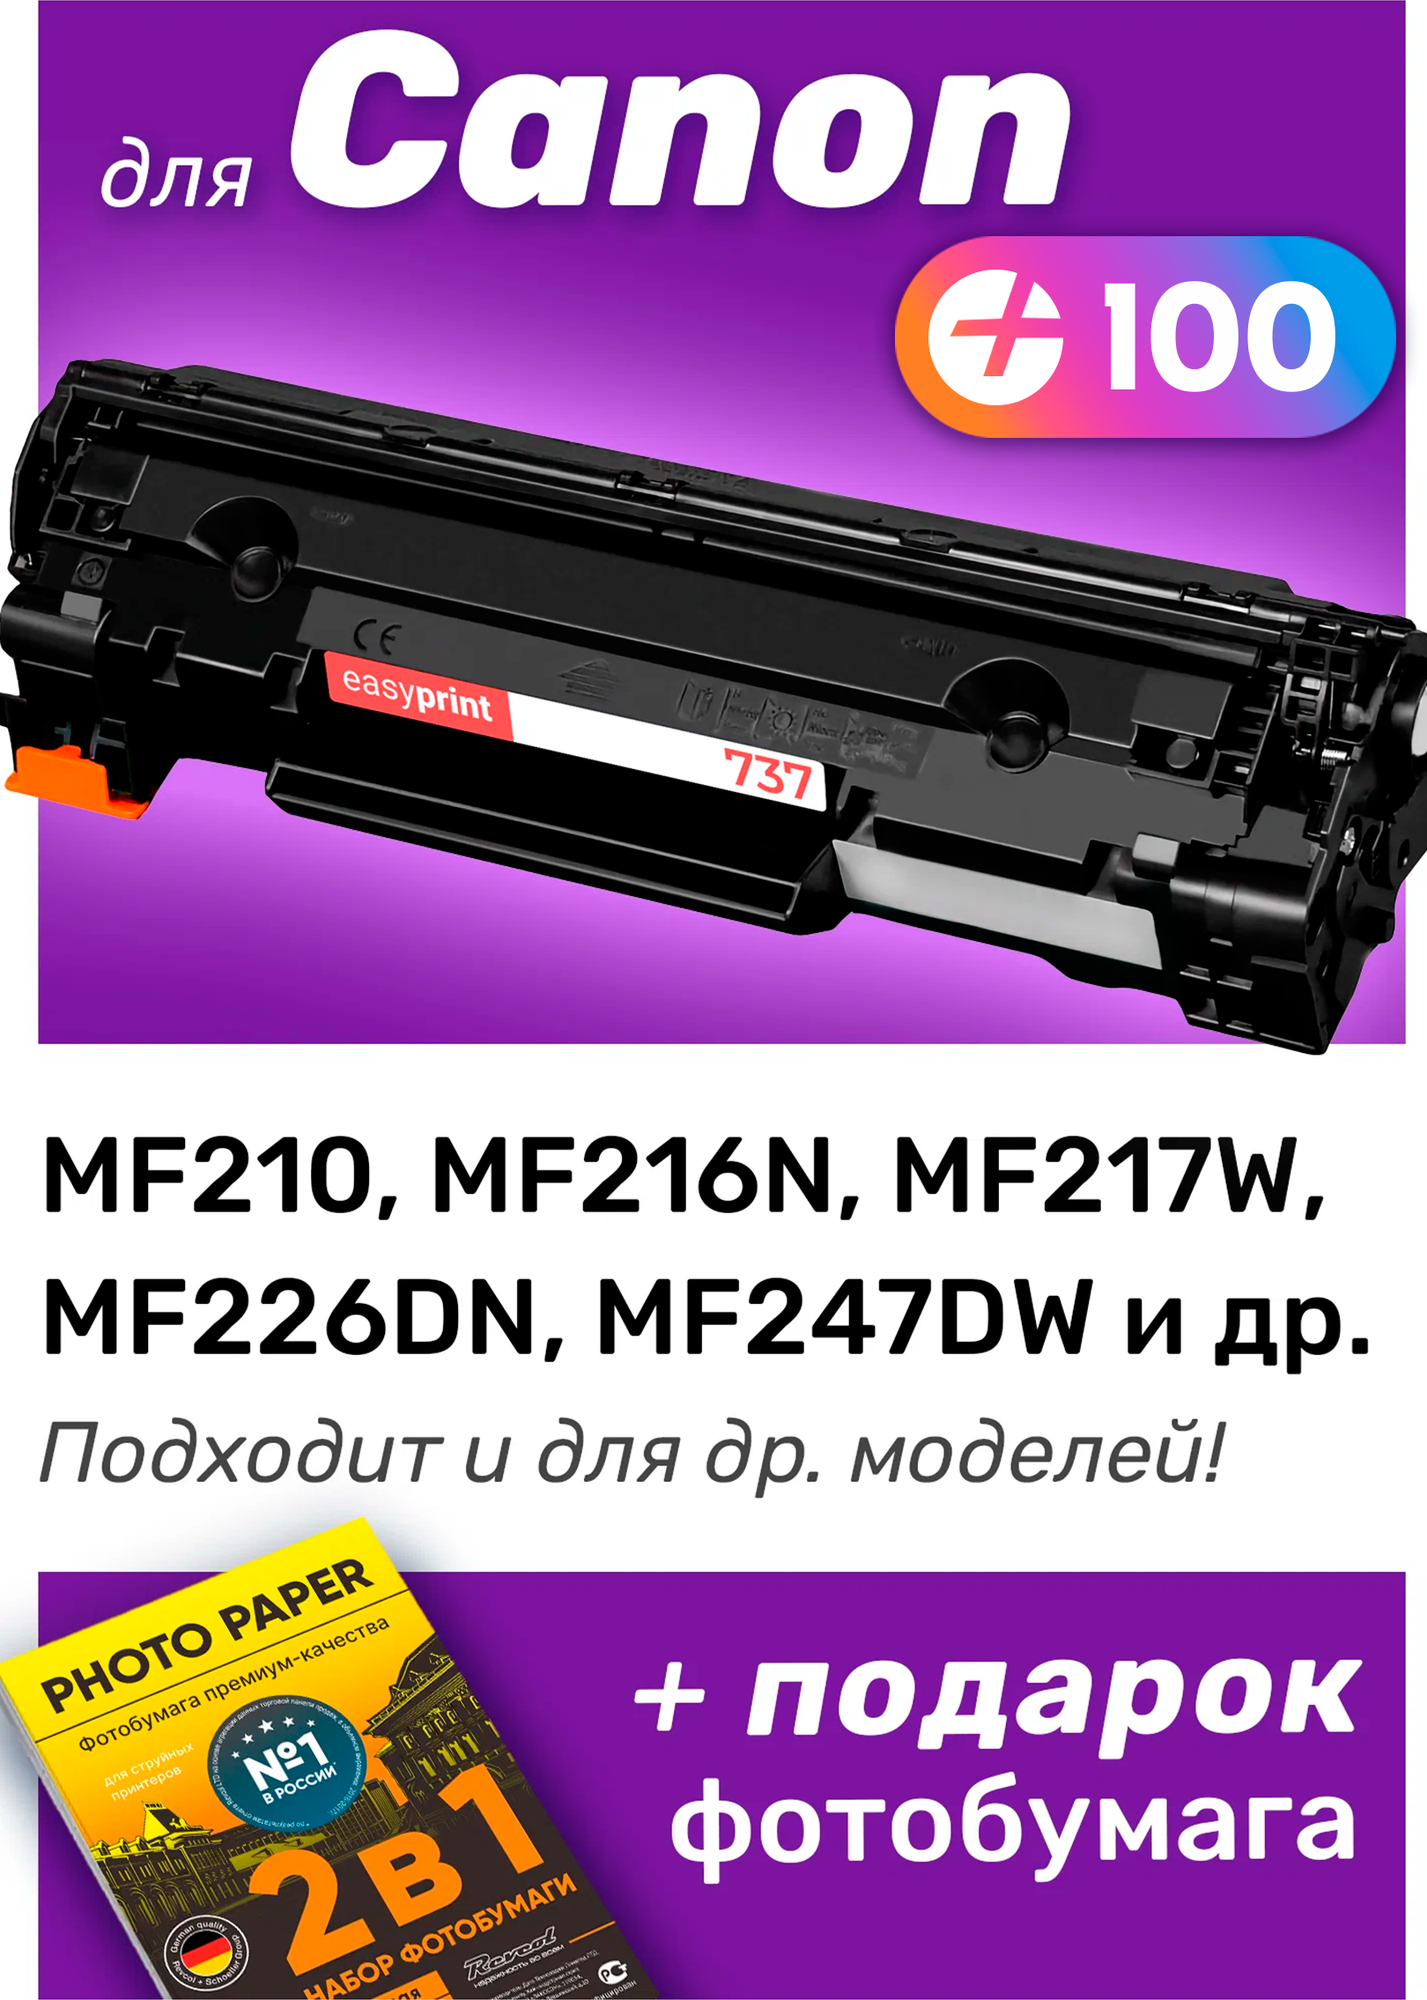 Лазерный картридж для 737, Canon MF210, MF216N, MF217W, MF226DN, MF247DW и др, с краской (тонером) черный новый заправляемый, 2400 копий